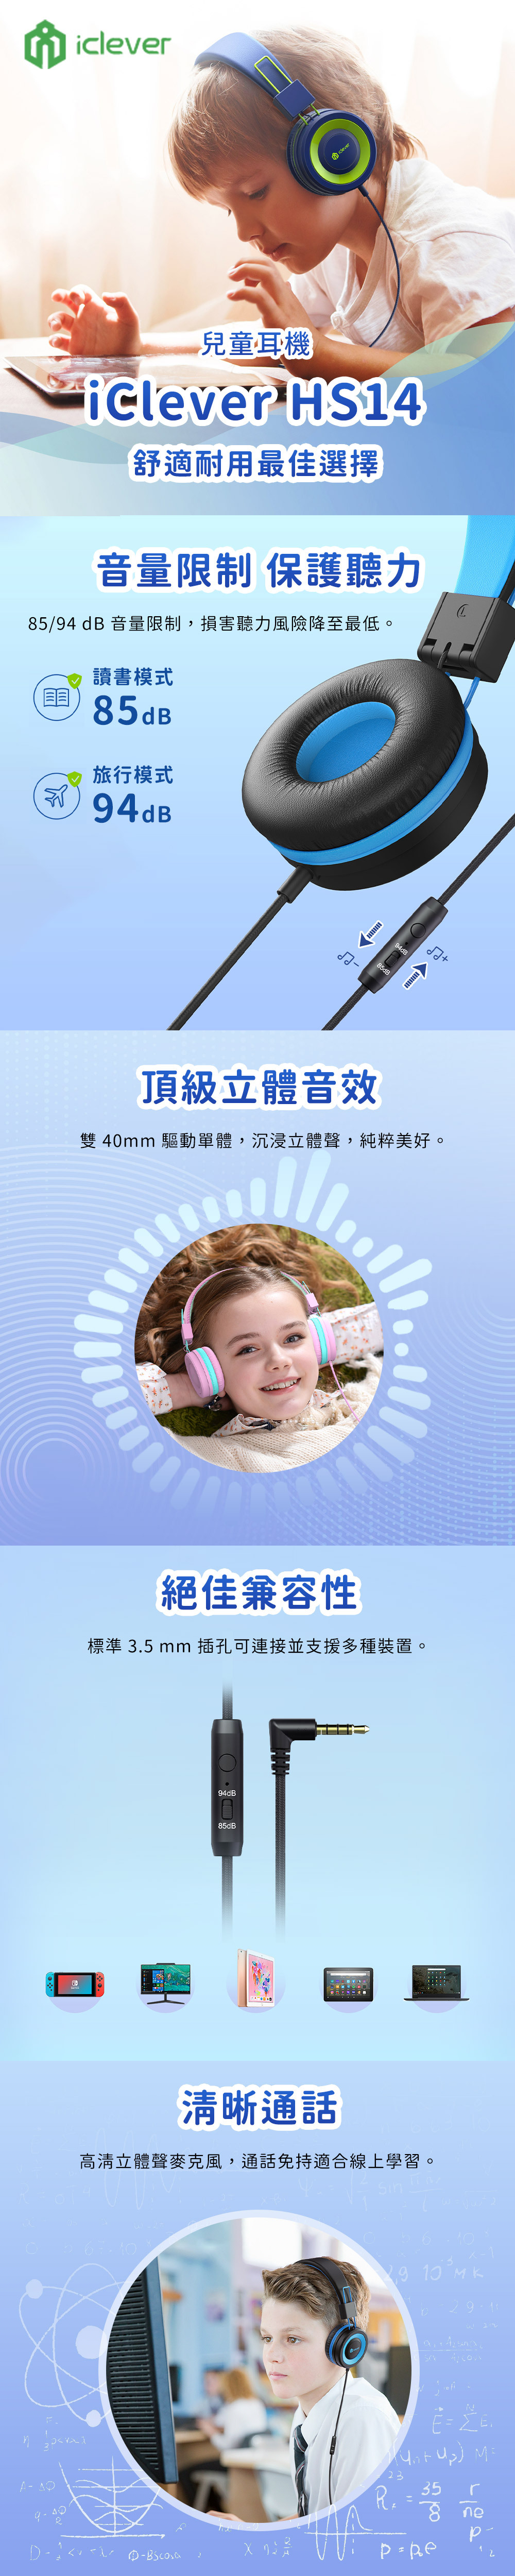 音量限制 保護聽力5/9 dB 音量限制,損害聽力風險降至最低。兒童耳機 HS4舒適耐用最佳選擇讀書模式5dB旅行模式94dB8頂級立體音效雙 4mm 驅動單體,沉浸立體聲,純粹美好。iclever 絕佳兼容性標準 .5 mm 插孔可連接並支援多種裝置。94dB85dB85dB清晰通話高清立體聲麥克風,通話免持適合線上學習。 94dB  013 4   35238 ne